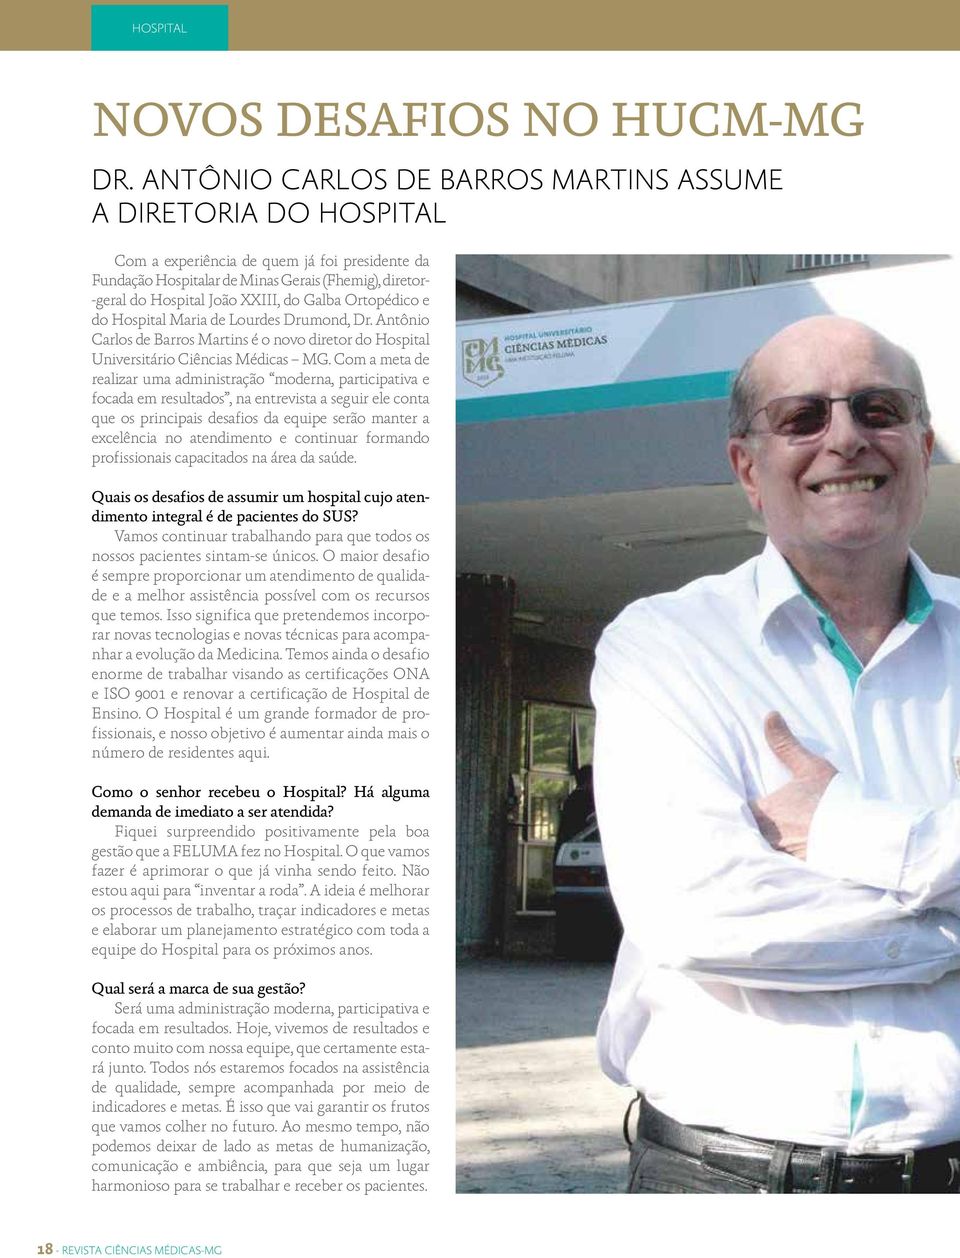 Galba Ortopédico e do Hospital Maria de Lourdes Drumond, Dr. Antônio Carlos de Barros Martins é o novo diretor do Hospital Universitário Ciências Médicas MG.